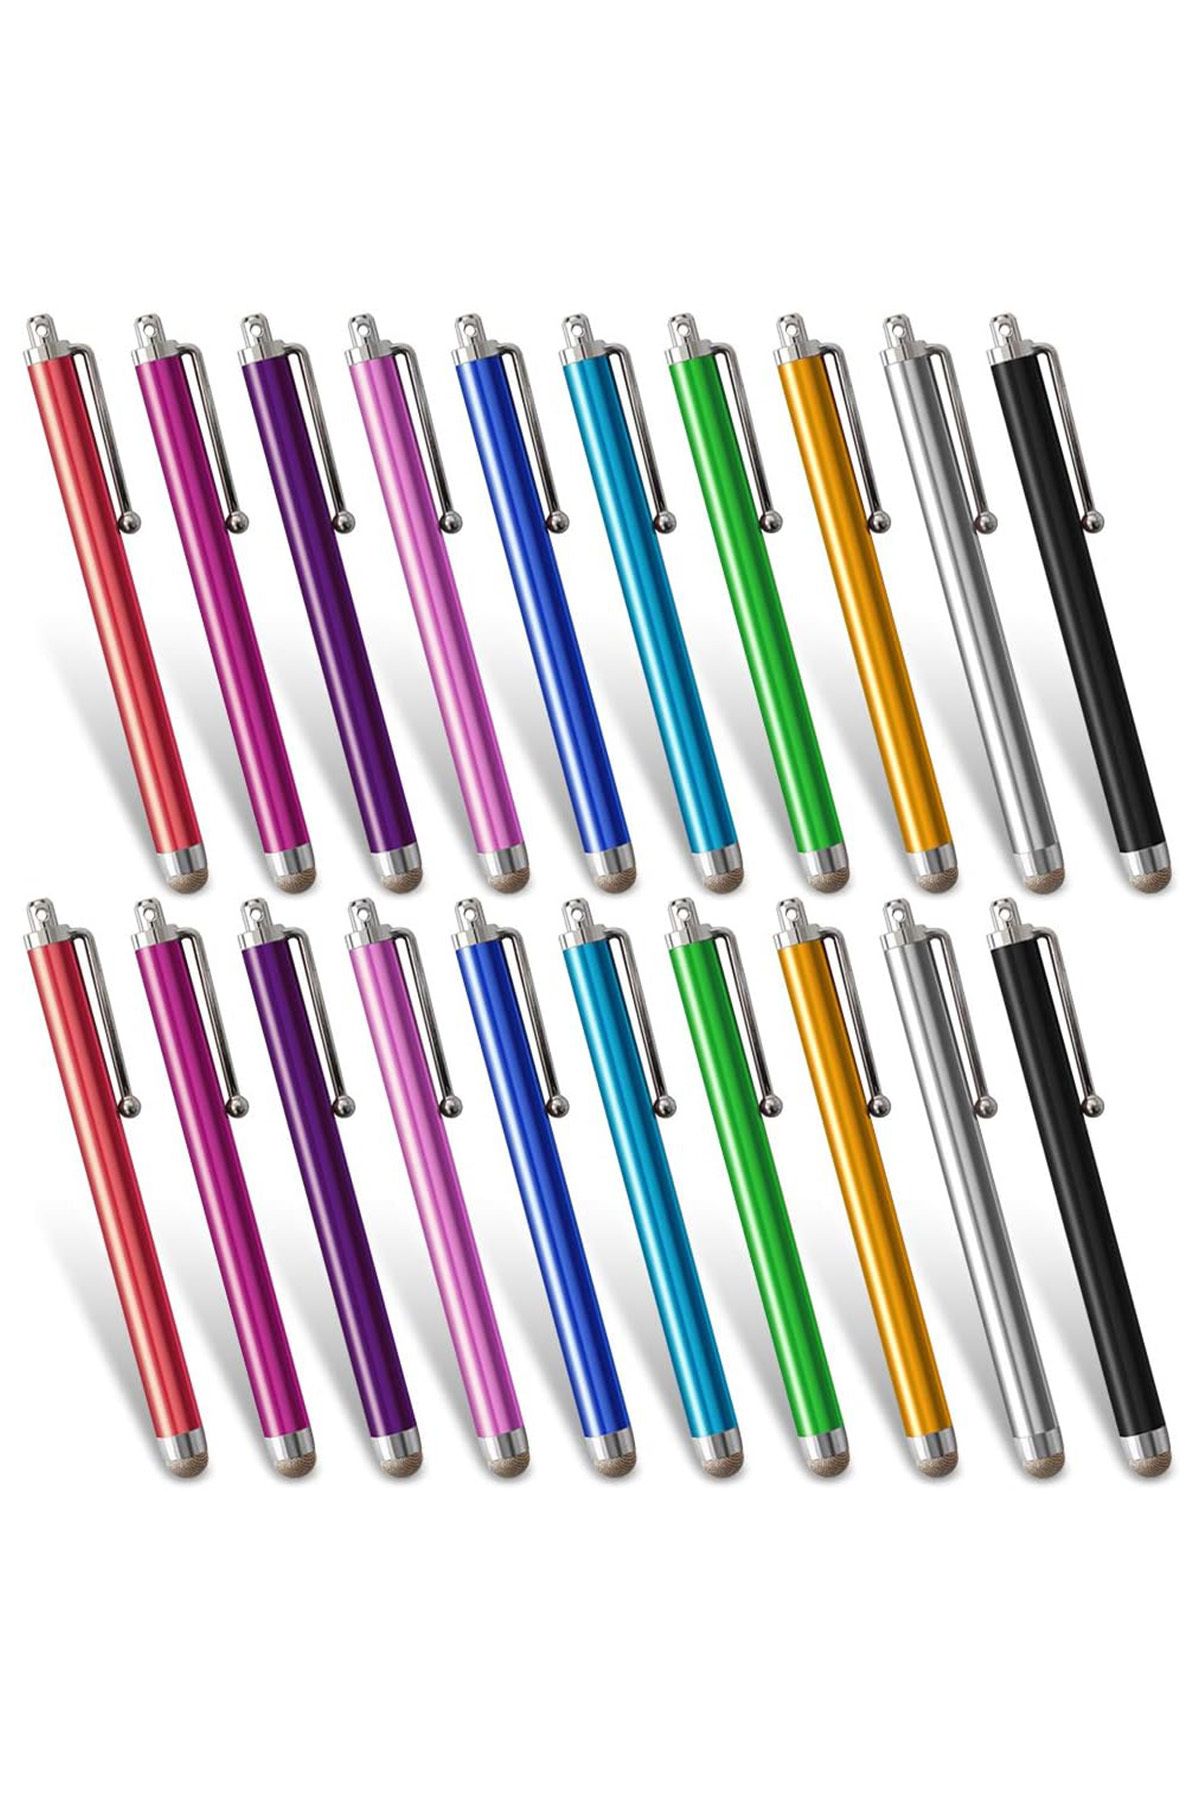 COZY SENSE Tablet Akıllı Tahta Dokunmatik Kalem Tüm Dokunmatik Yüzeylerde Çalışır Dokunmatik Uçlu Akıllı Kalem